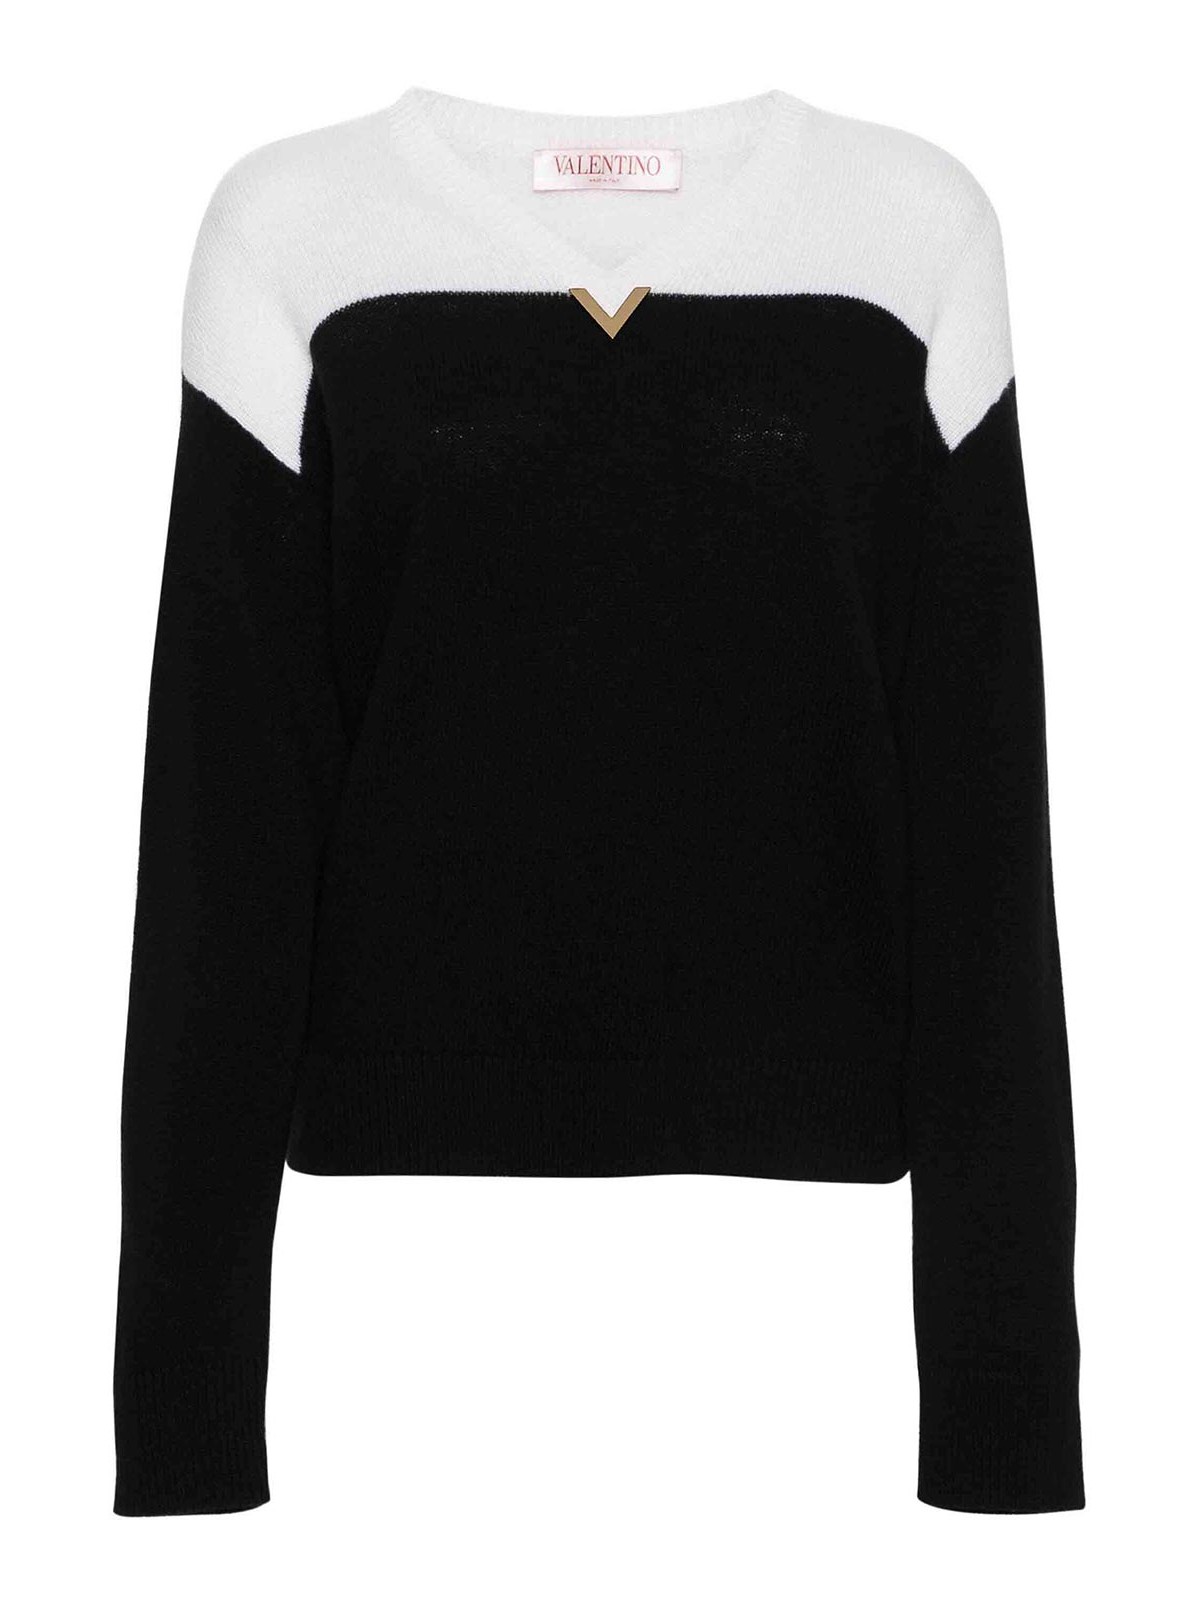 Valentino Two-tone Sweater In Black